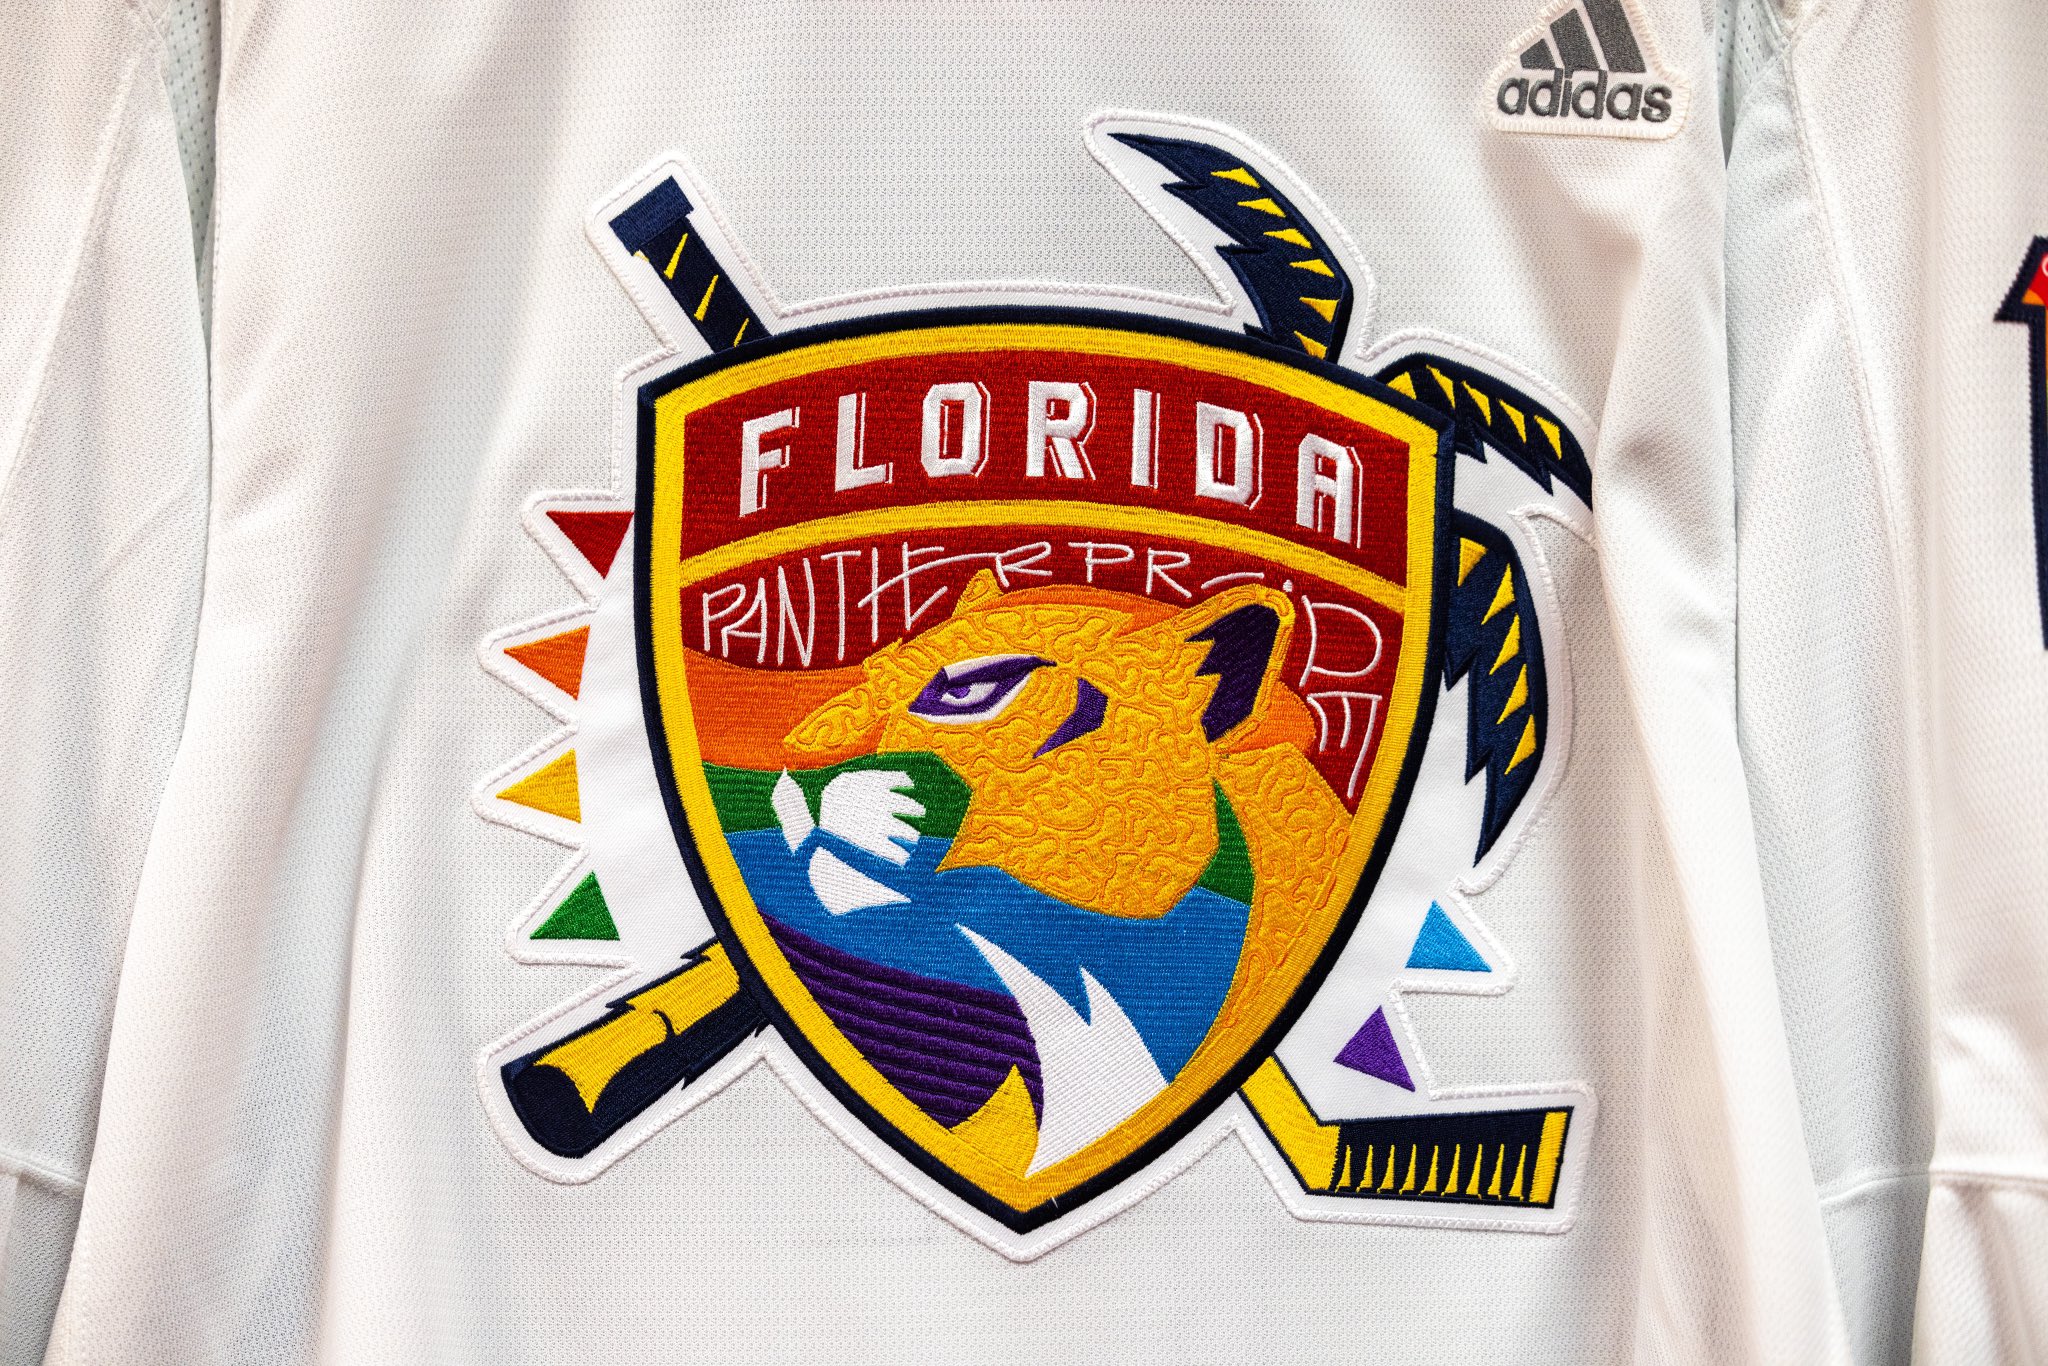 Florida Panthers Gear